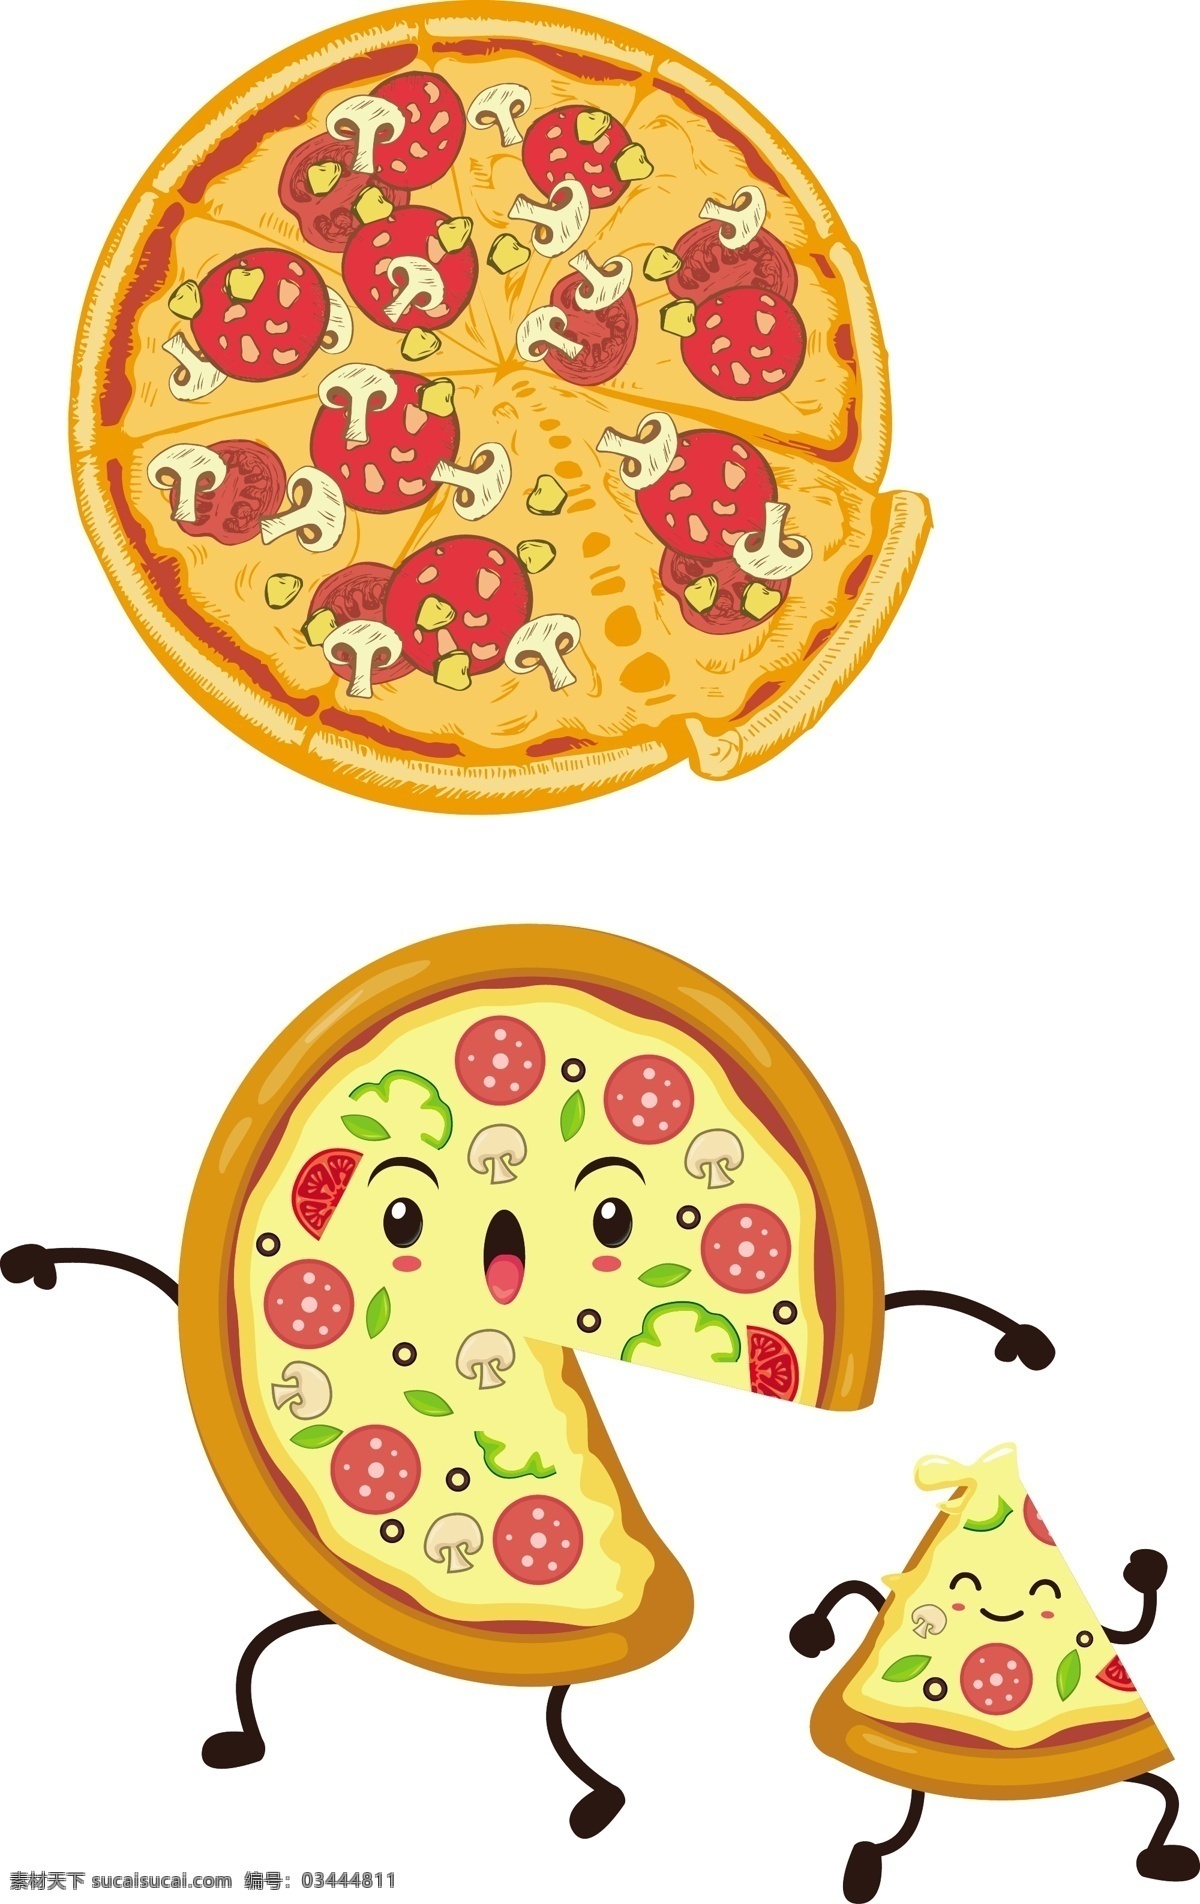 矢量卡通披萨 披萨 披萨小人 番茄披萨 西红柿披萨 网红披萨 麦当劳披萨 肯德基披萨 食物 快餐 西餐 西餐披萨 长脚披萨 表情披萨 披萨包装食材 蘑菇披萨 可爱披萨 可爱卡通披萨 元素